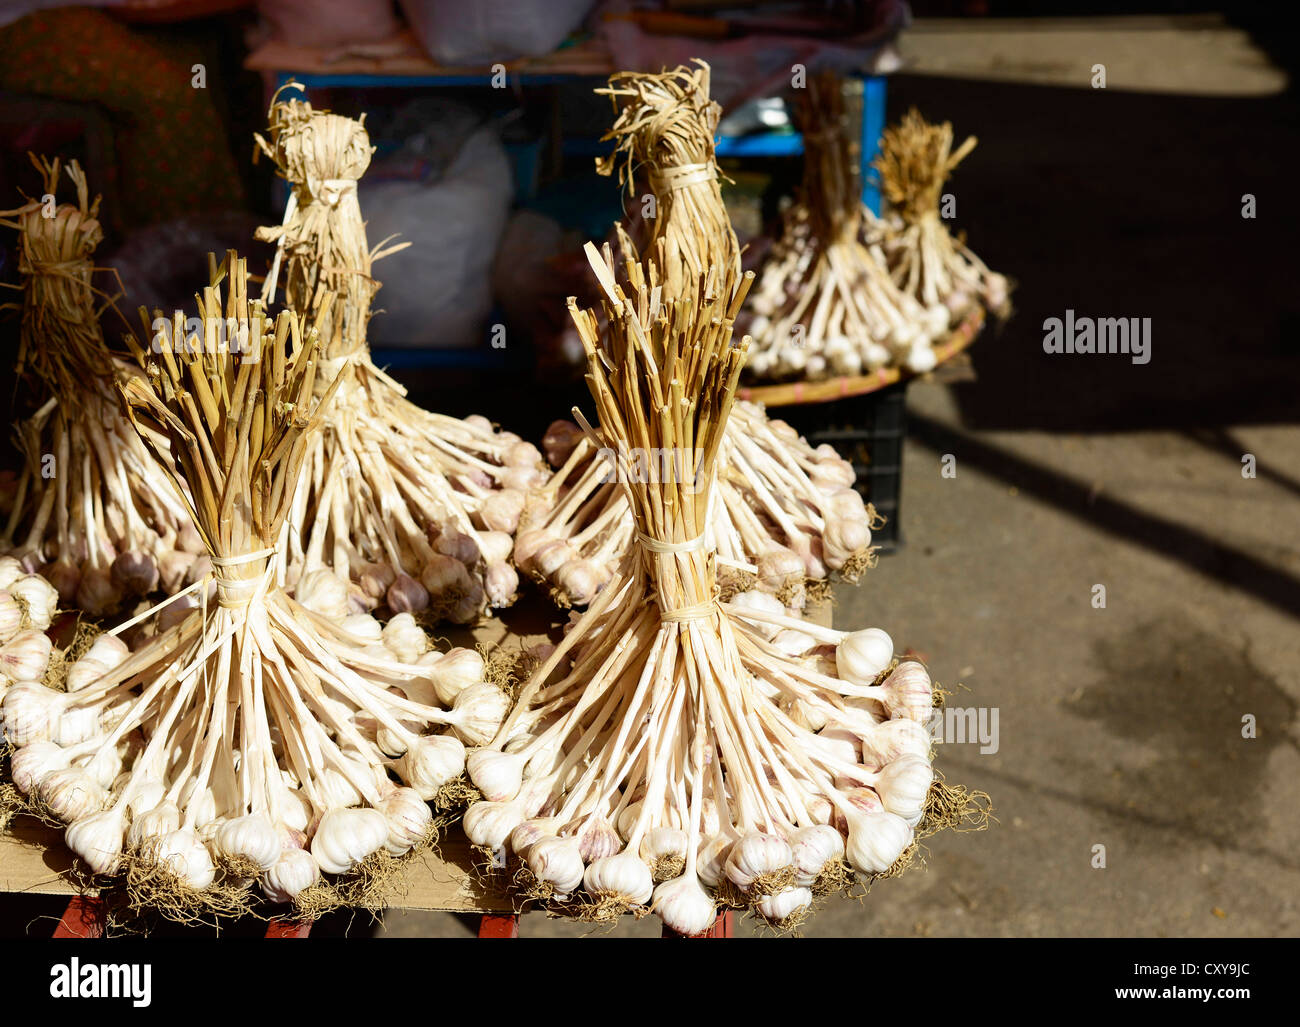 Fresh Garlic sold in Kengtung market, Myanmar. Stock Photo